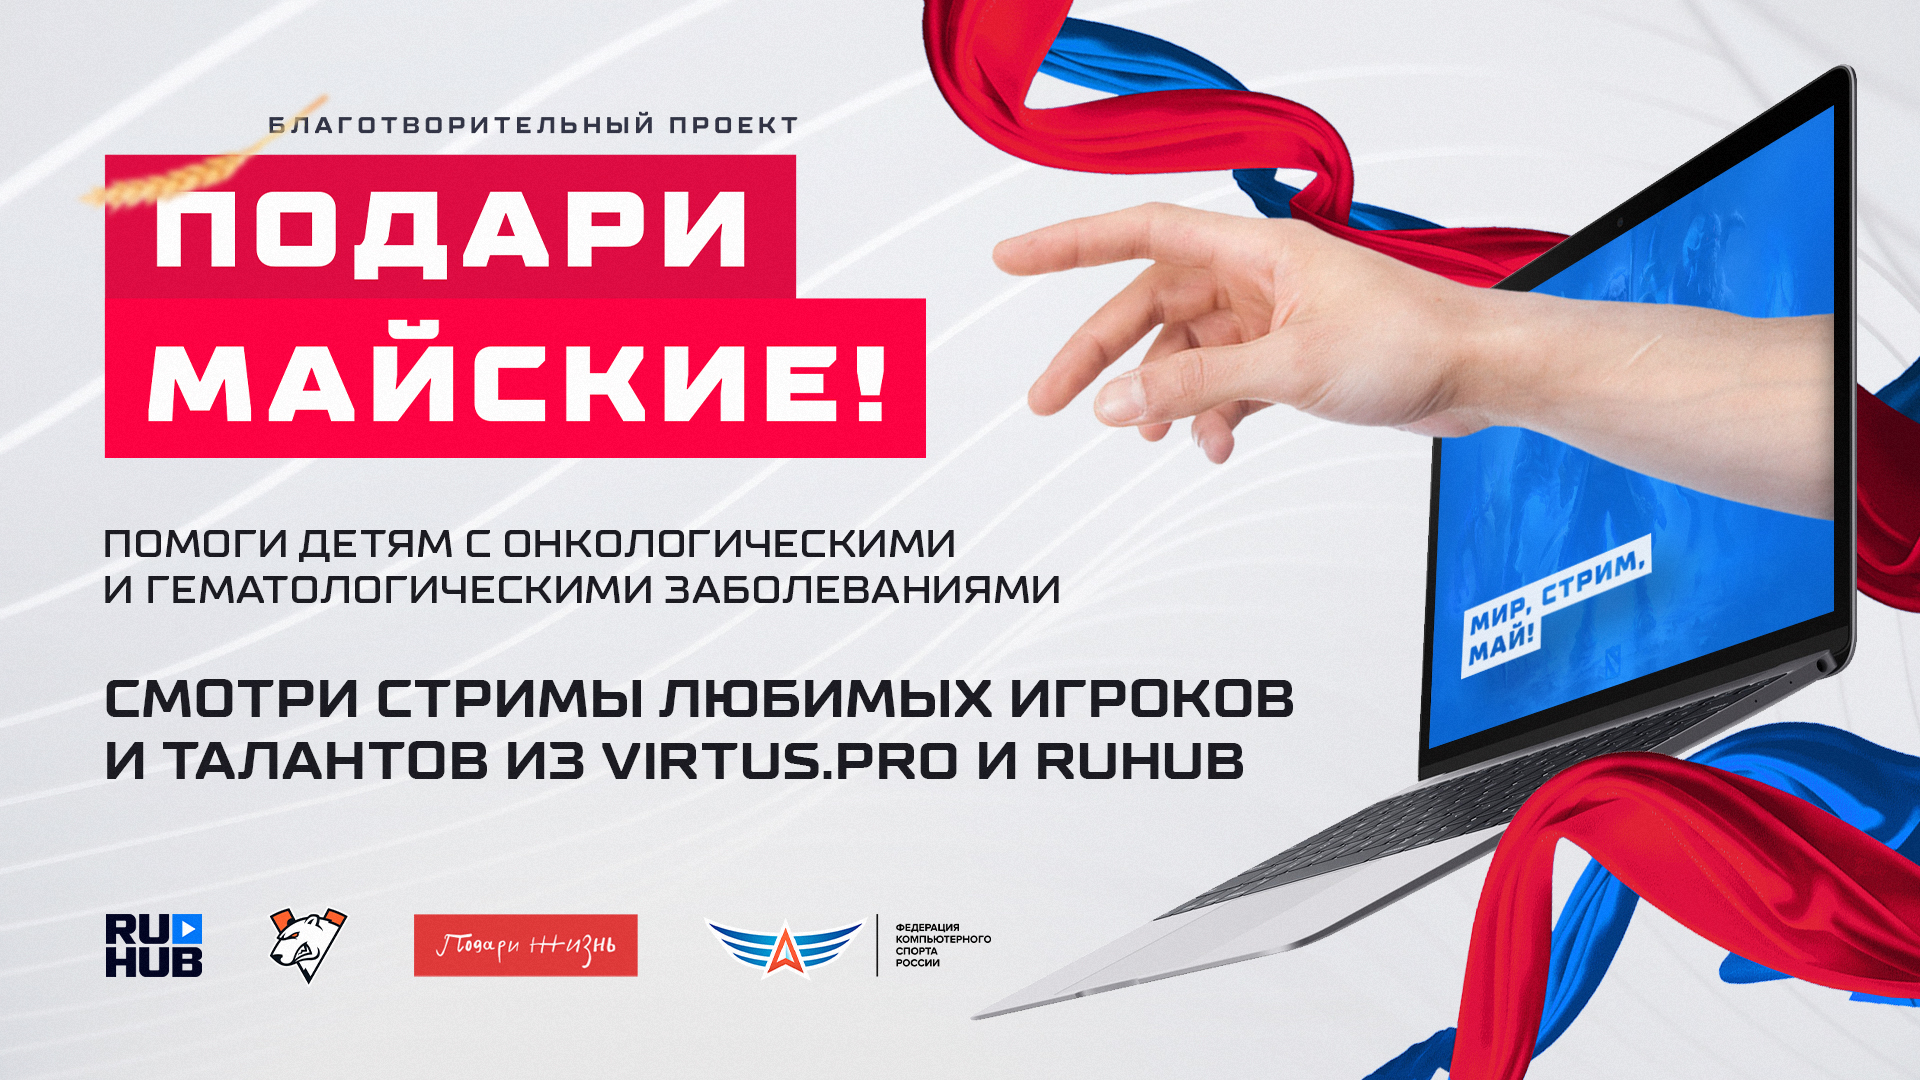 Фонд «Подари жизнь», Virtus.pro, RuHub и Федерация компьютерного спорта России запускают благотворительную акцию «Подари майские»